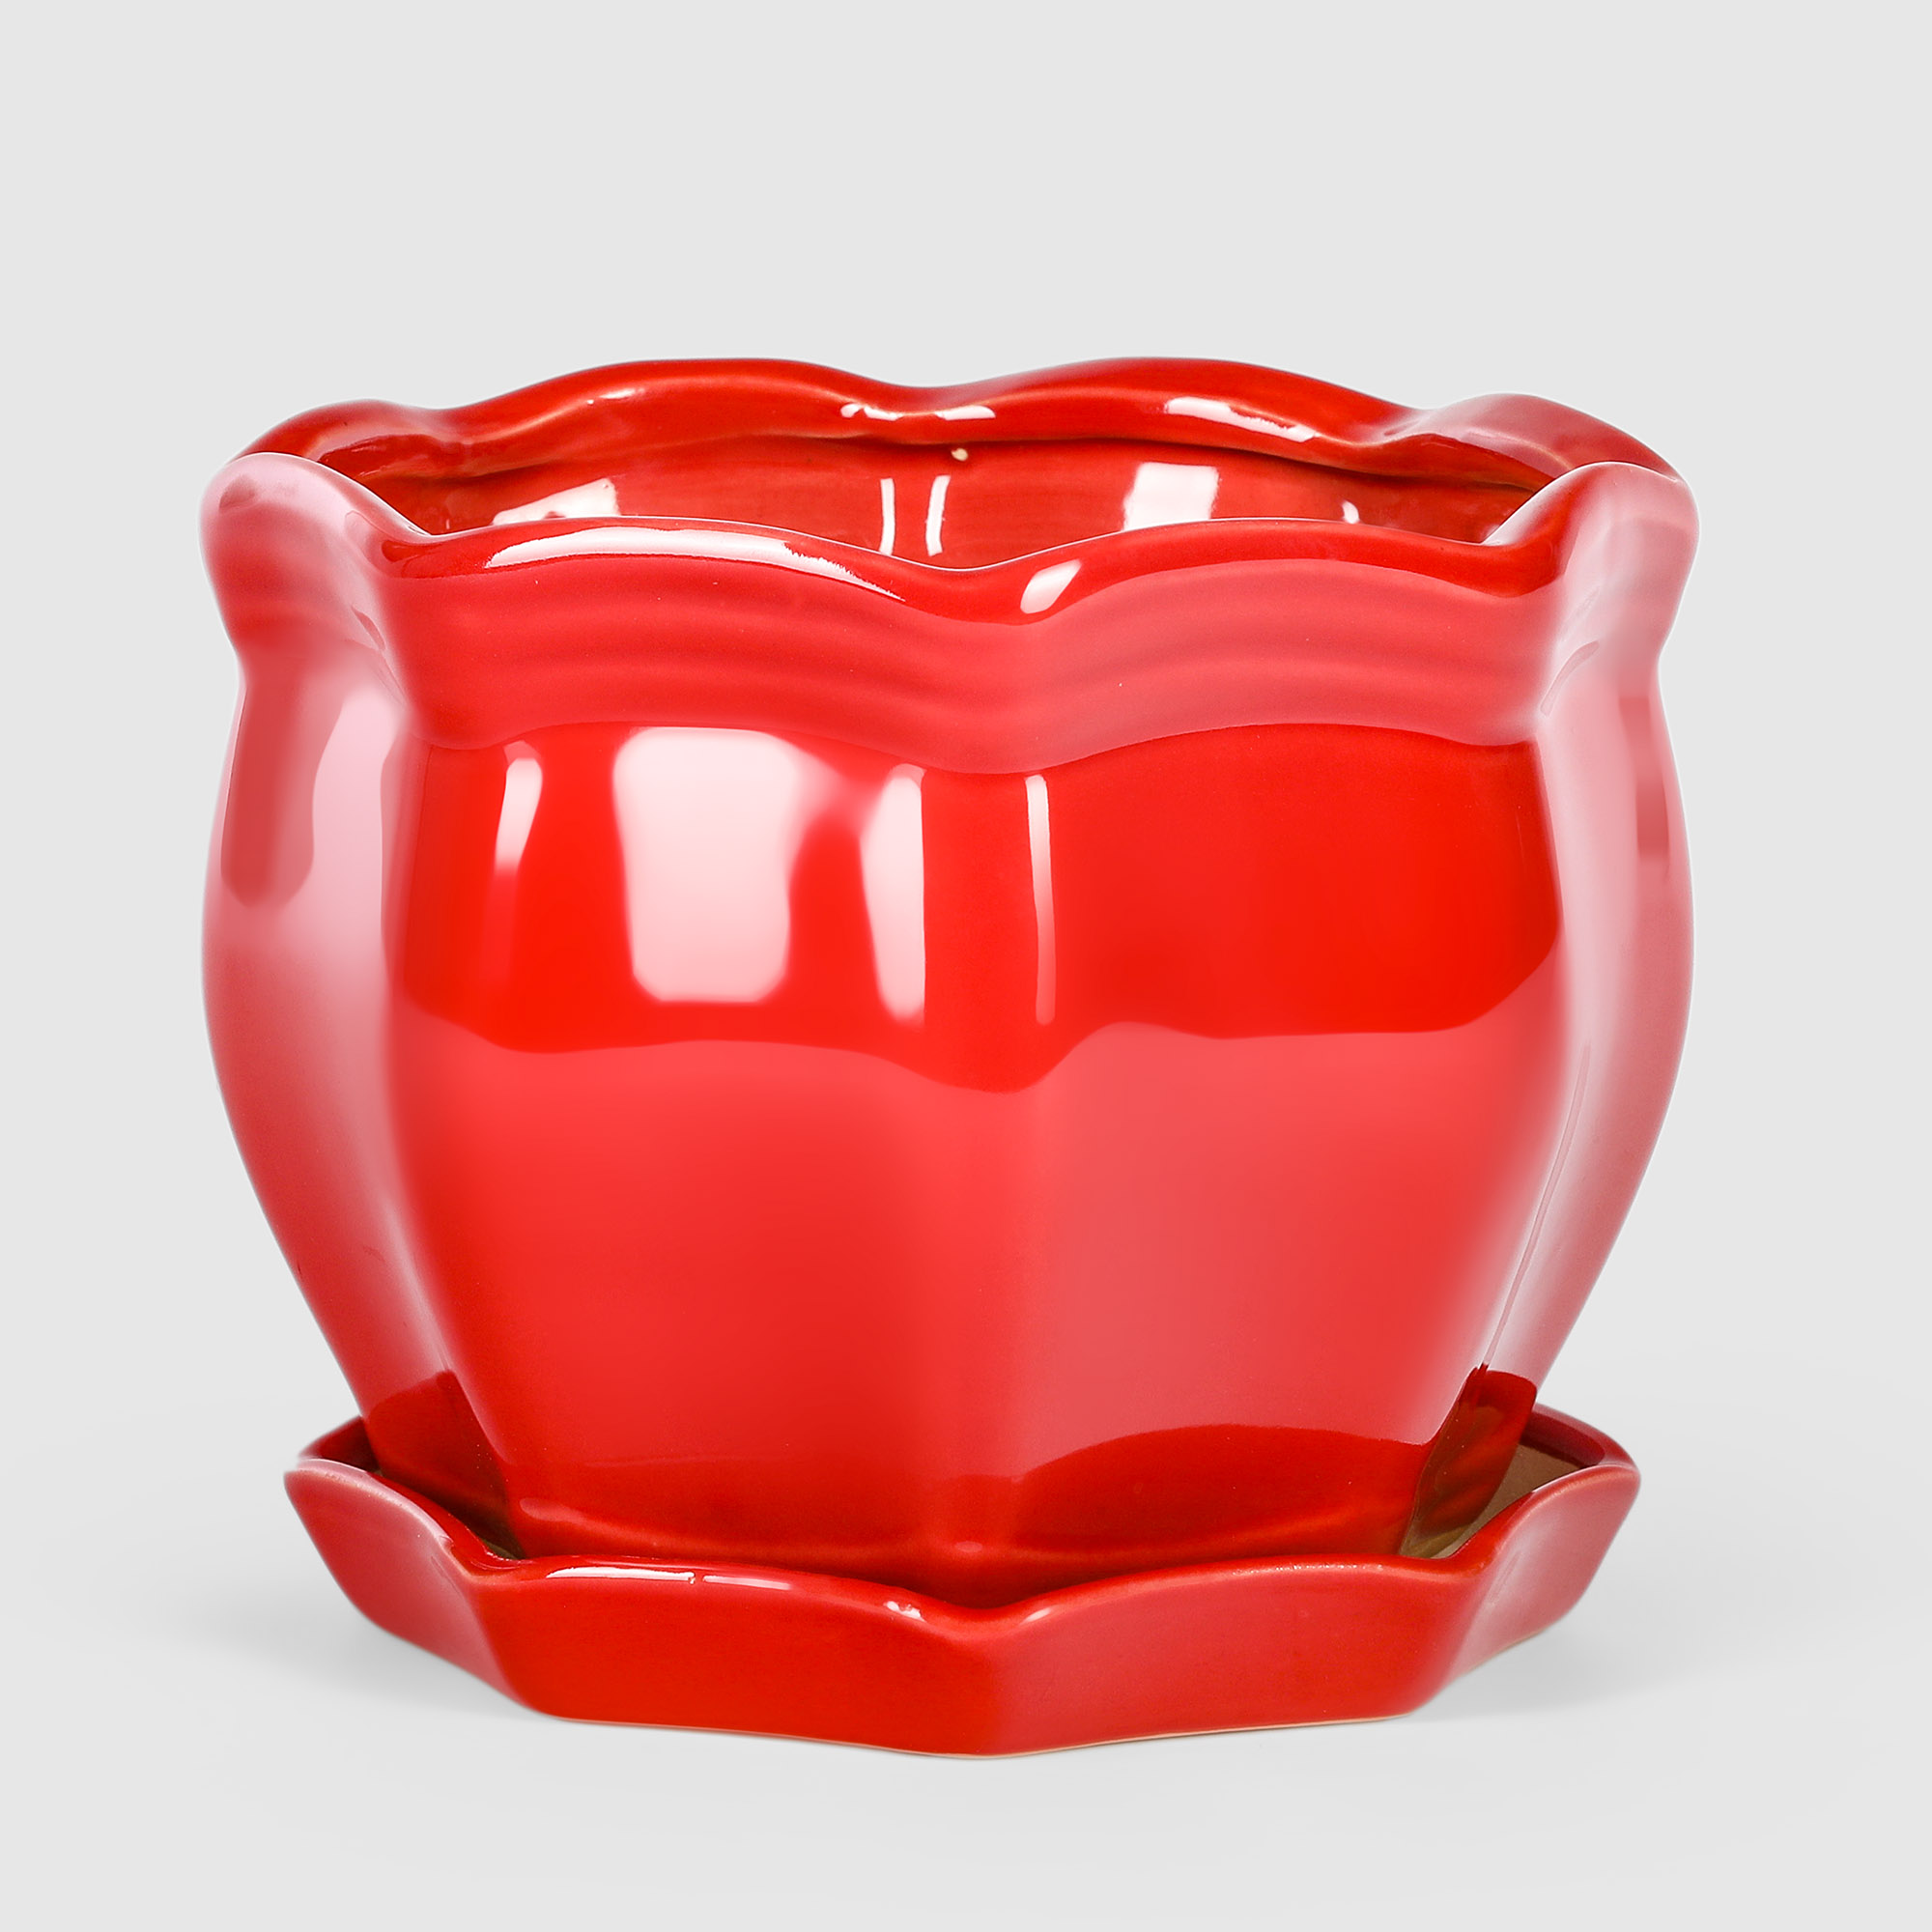 очное кашпо дарим красиво двушка лайт реечное р00015961 0 2 л красный 1 шт Кашпо керамическое для цветов Shine Pots 18x14см красный глянец